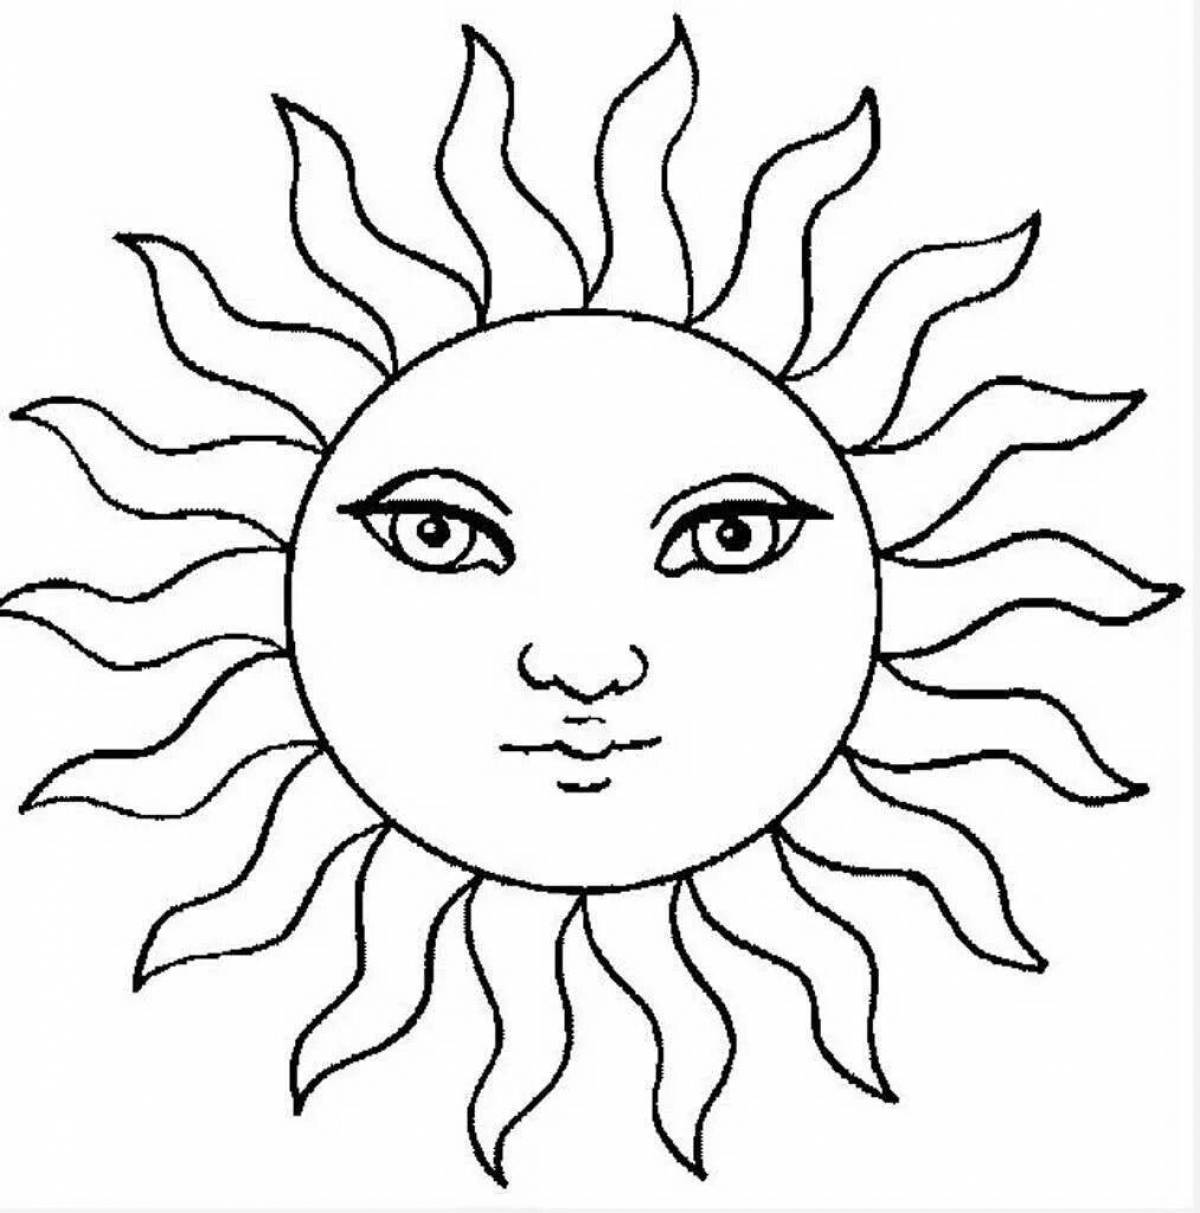 Великолепная раскраска солнечная фигура